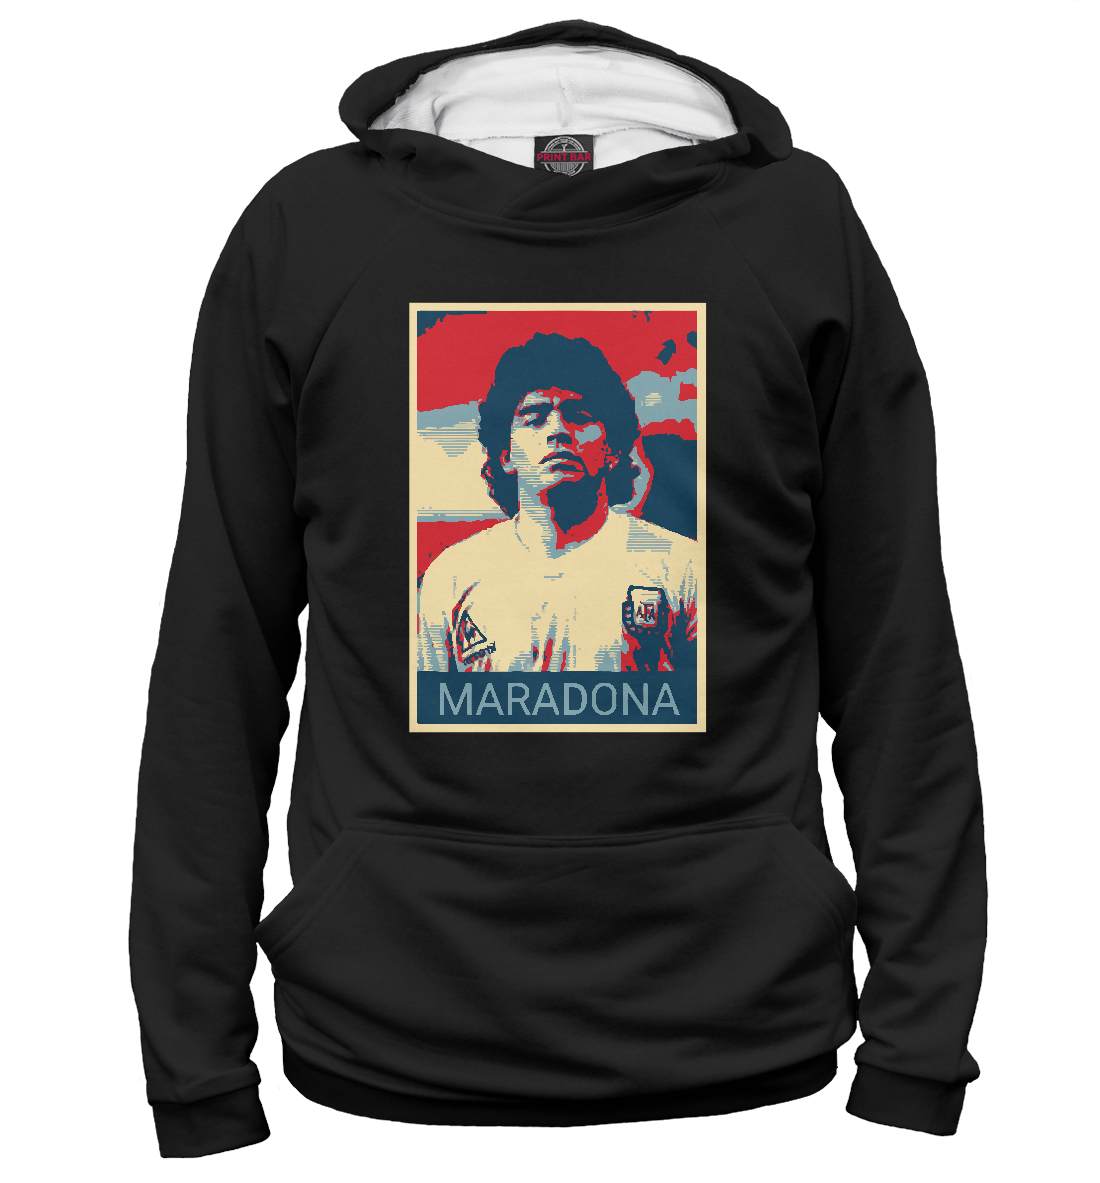 Женский Худи Maradona, артикул FLT-836145-hud-1mp